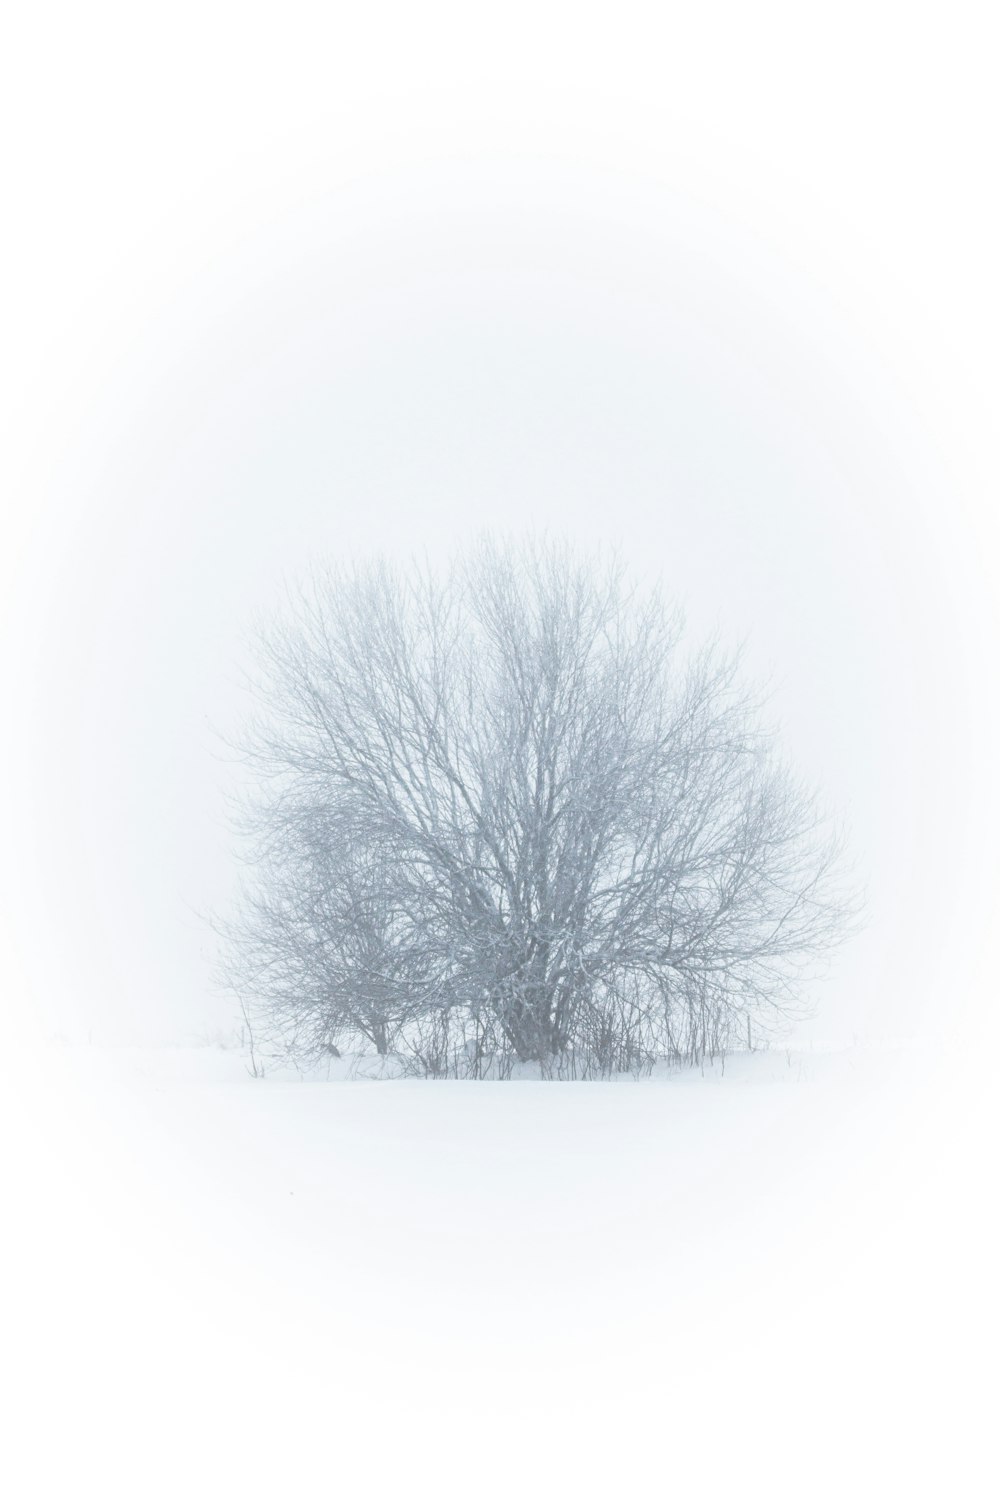 Ein einsamer Baum in einem schneebedeckten Feld